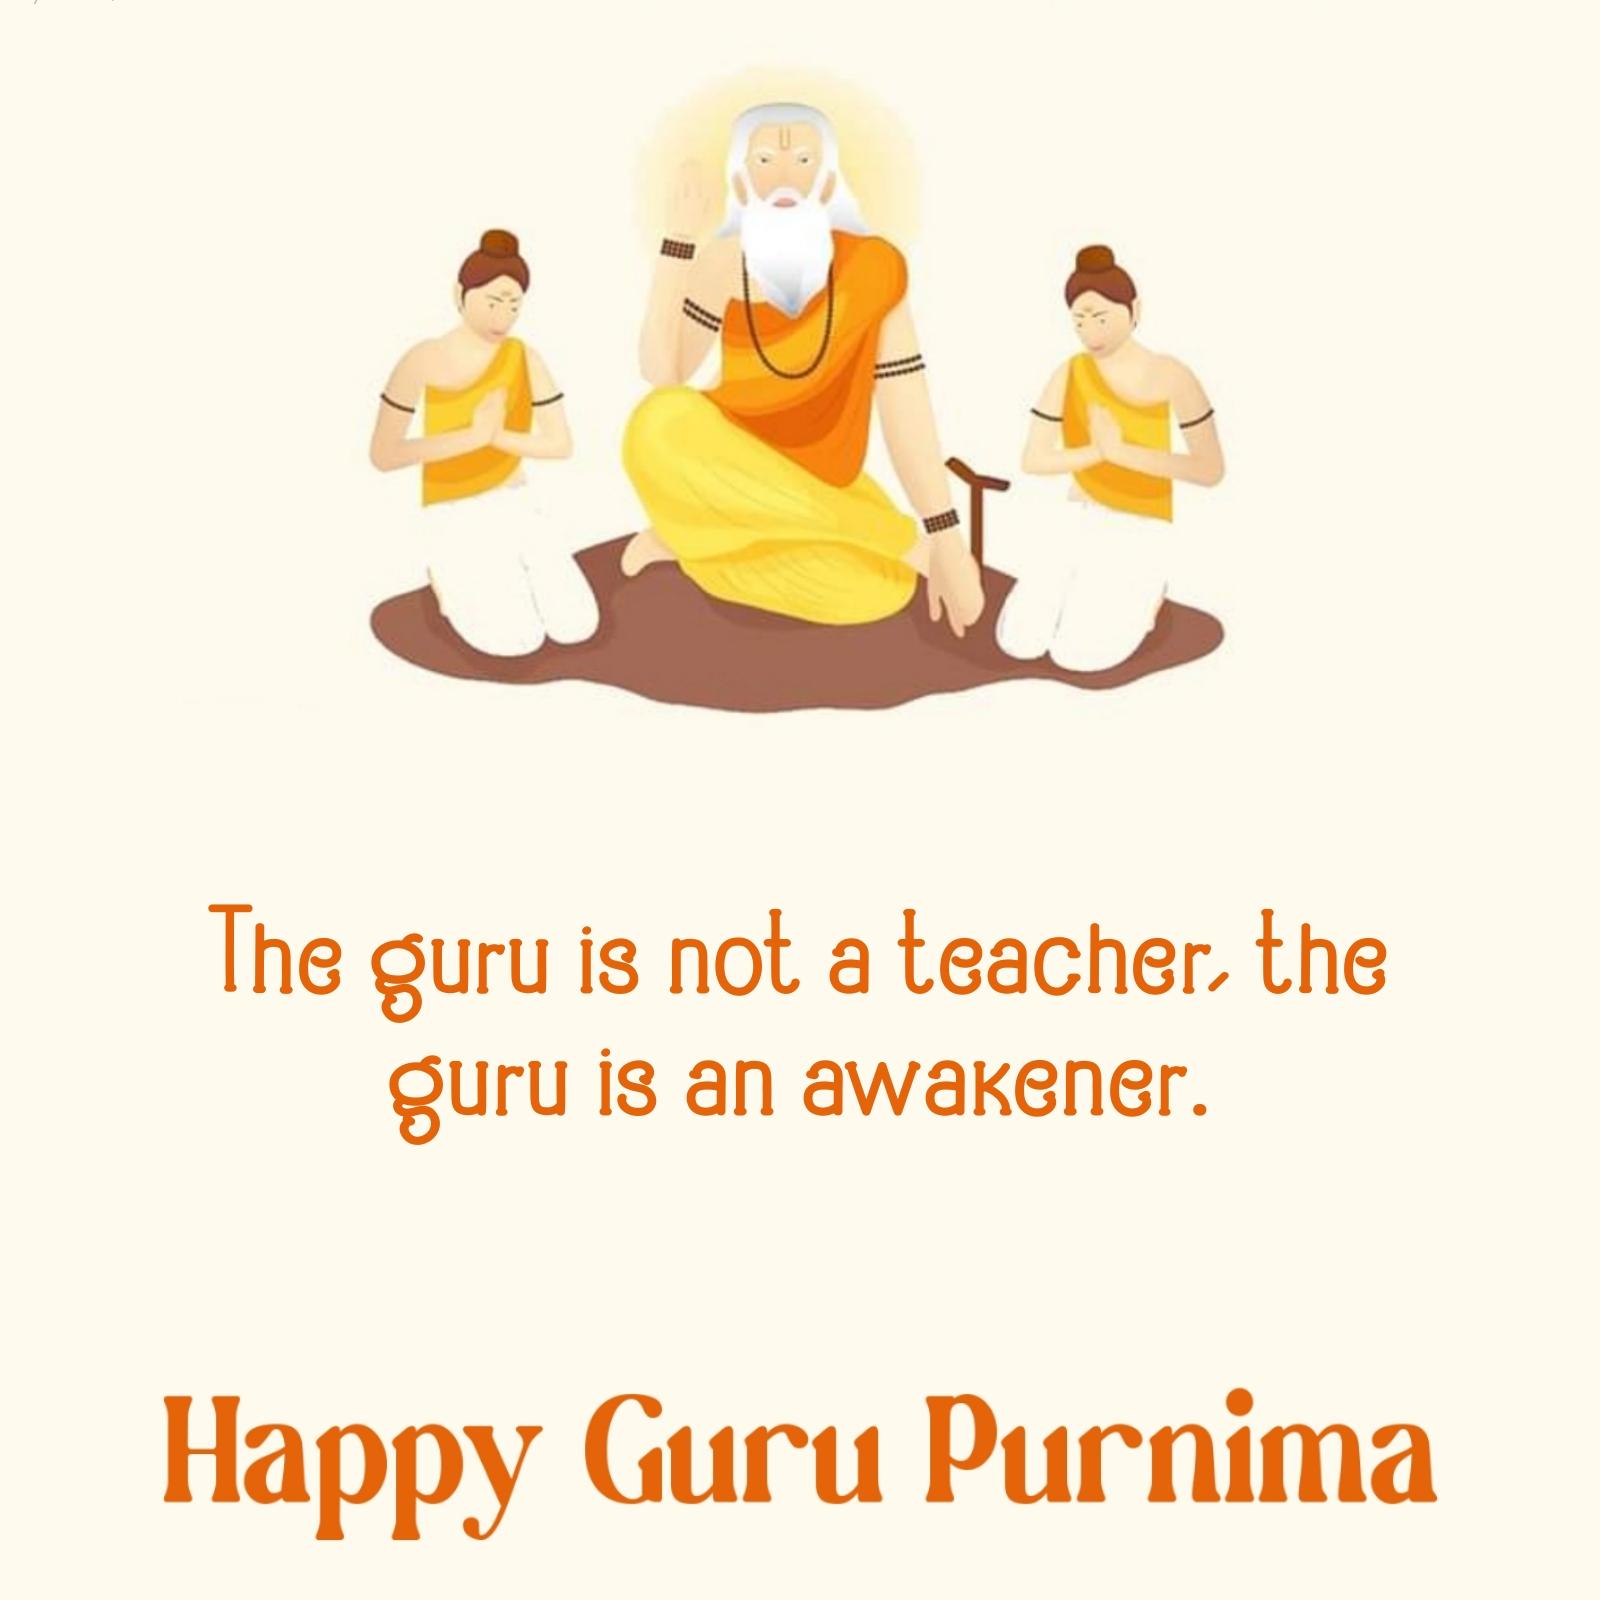 The guru is not a teacher the guru is an awakener